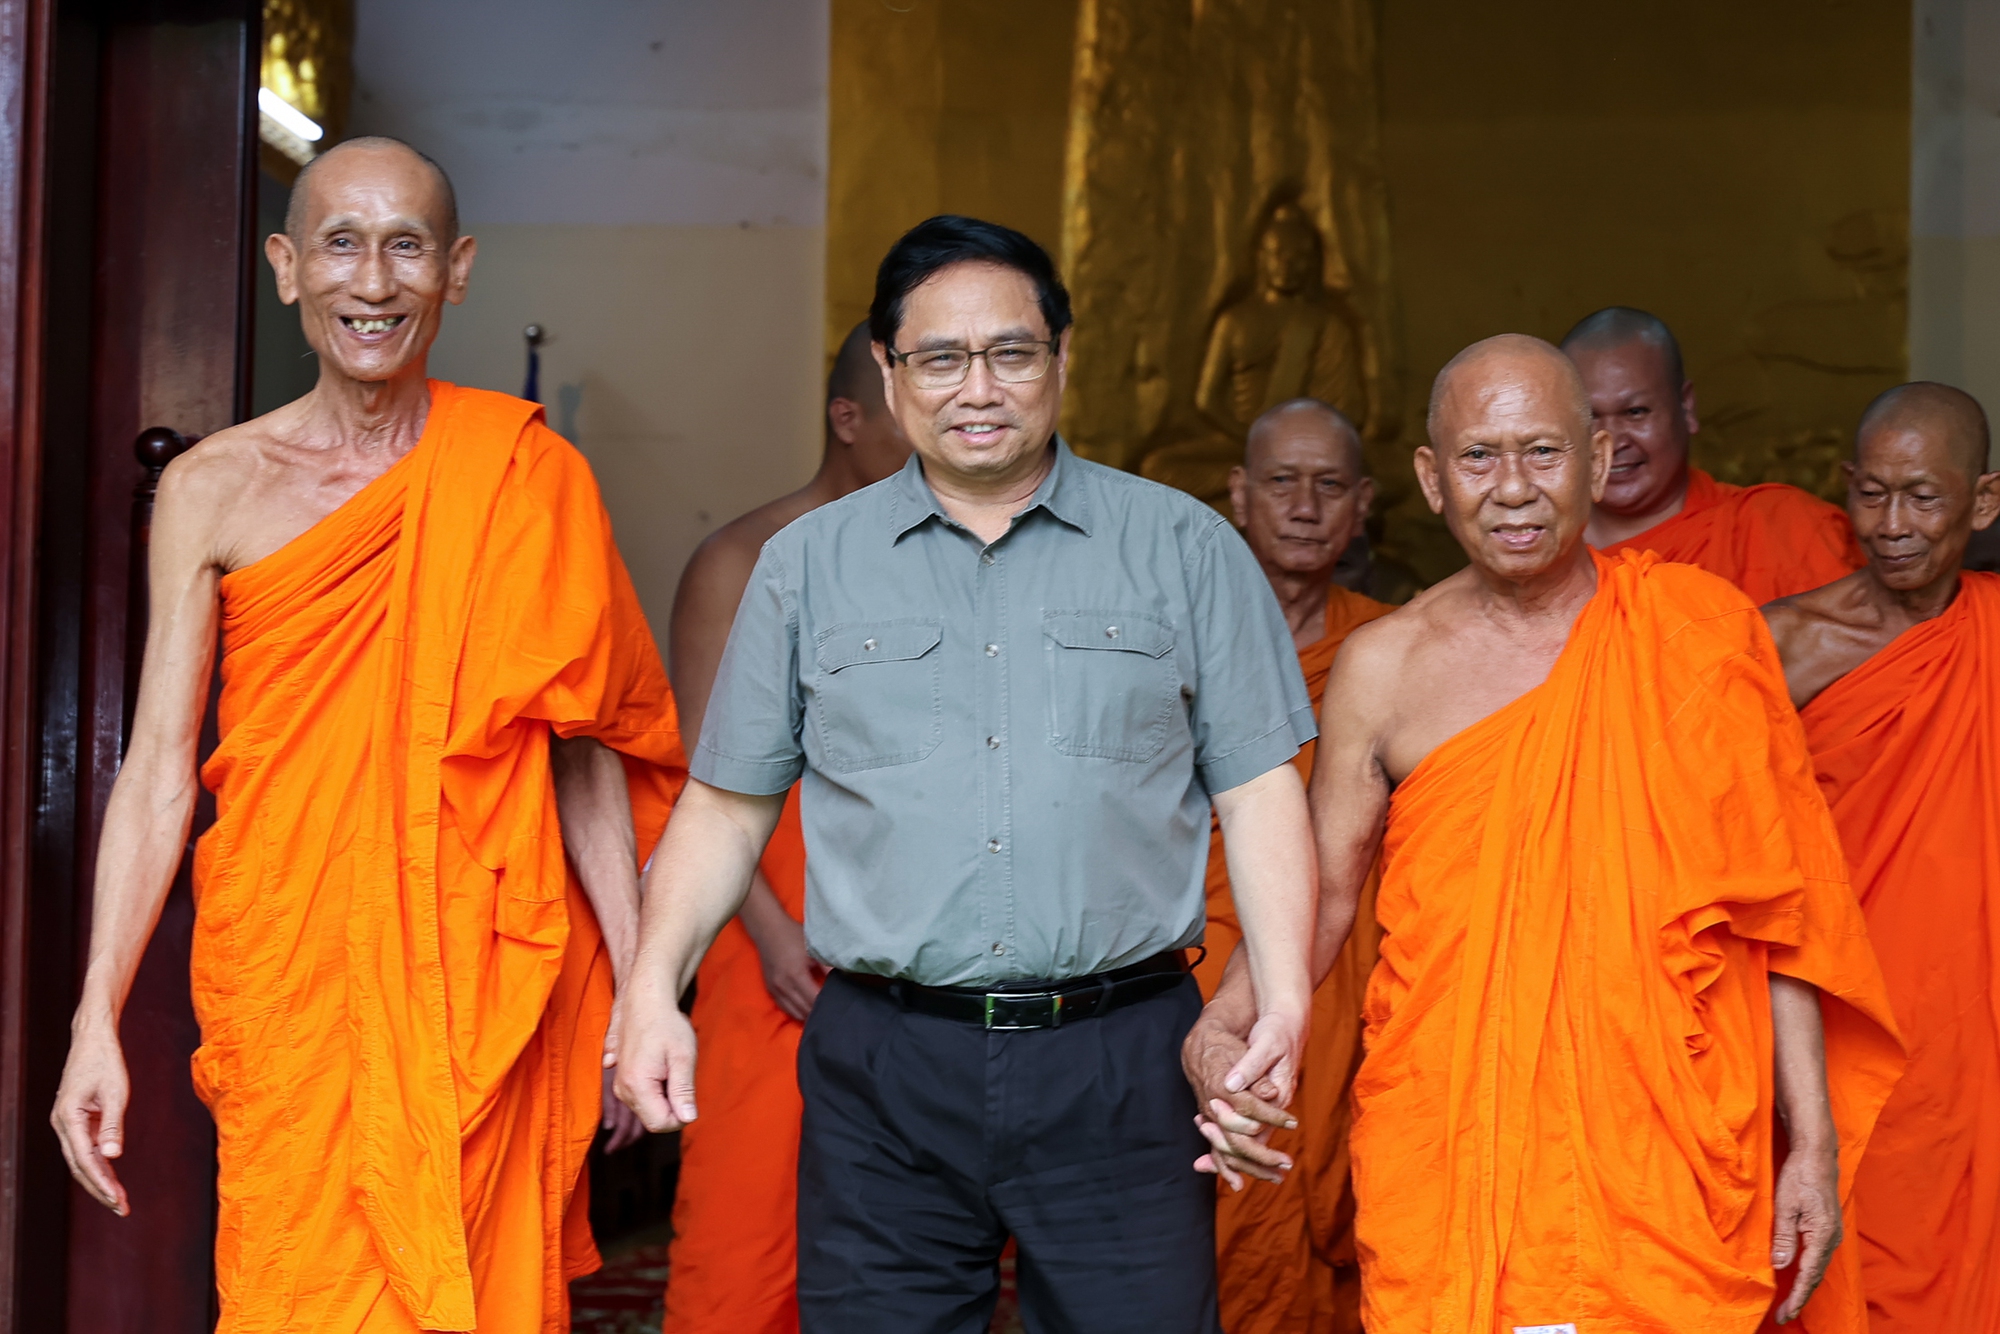 Thủ tướng Chính phủ khẳng định trong thành tích chung của đất nước có sự đóng góp quan trọng của sư sãi nói chung, phái Nam tông Khmer nói riêng. Ảnh: Thanh Hà